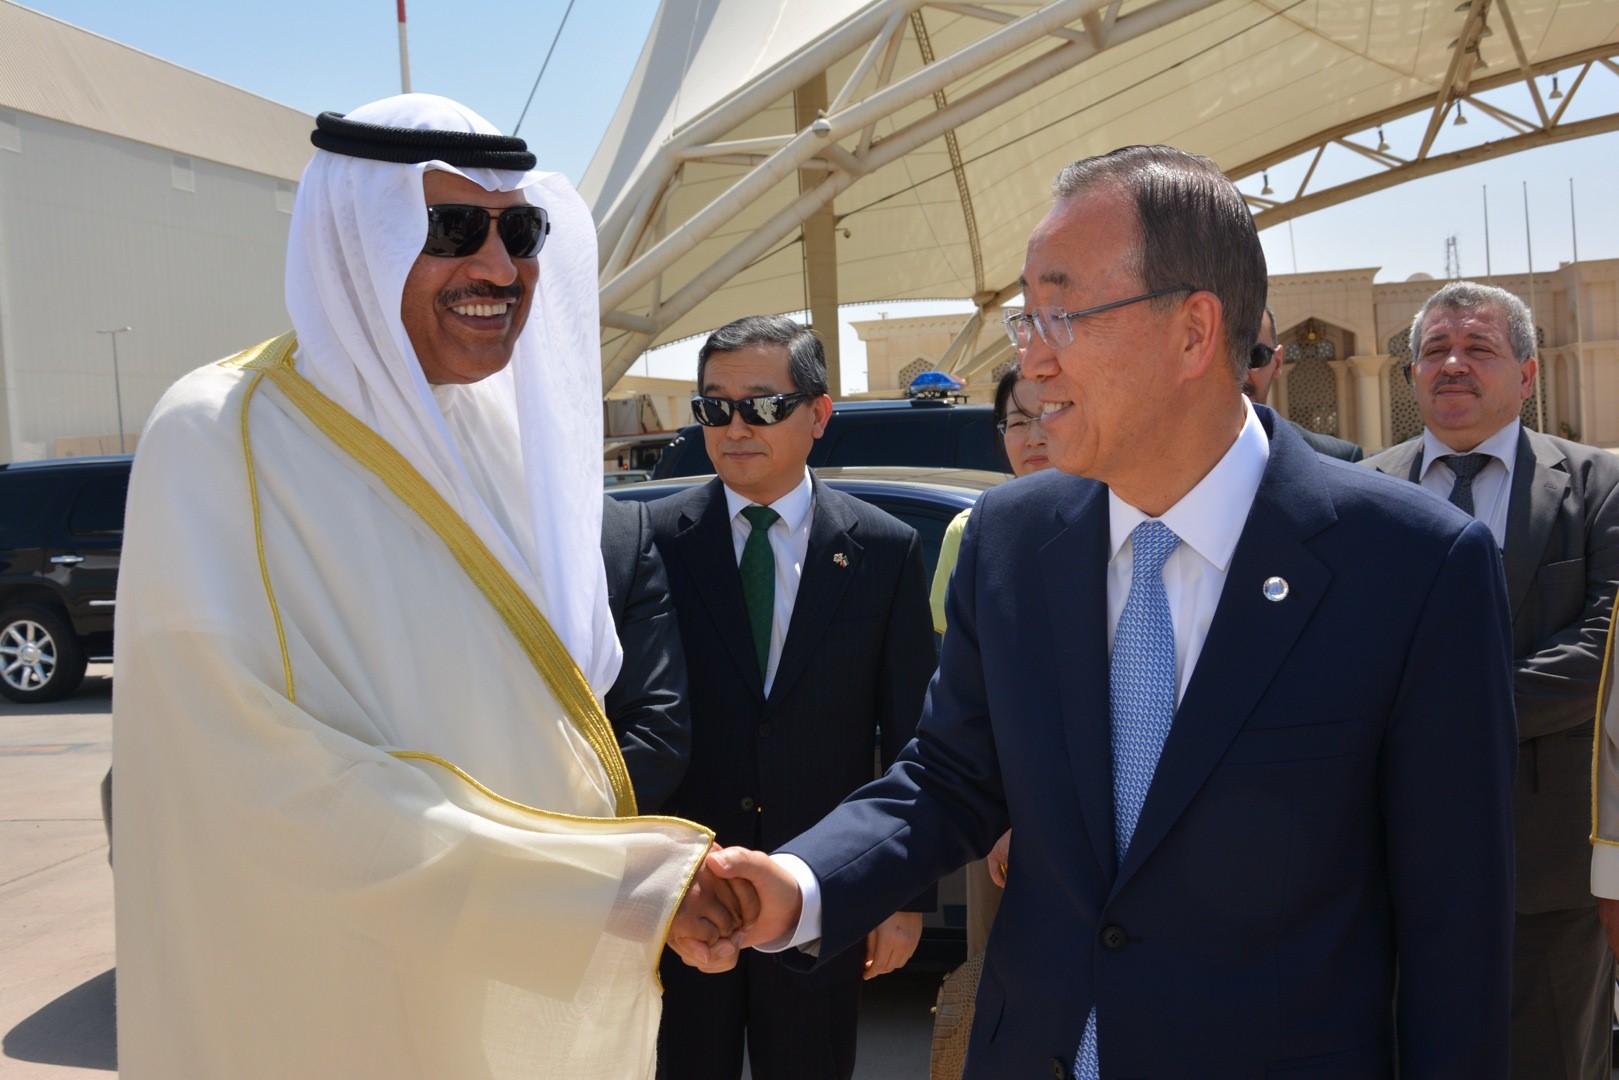 UN Secretary-General Ban Ki-moon as he was leaving Kuwait